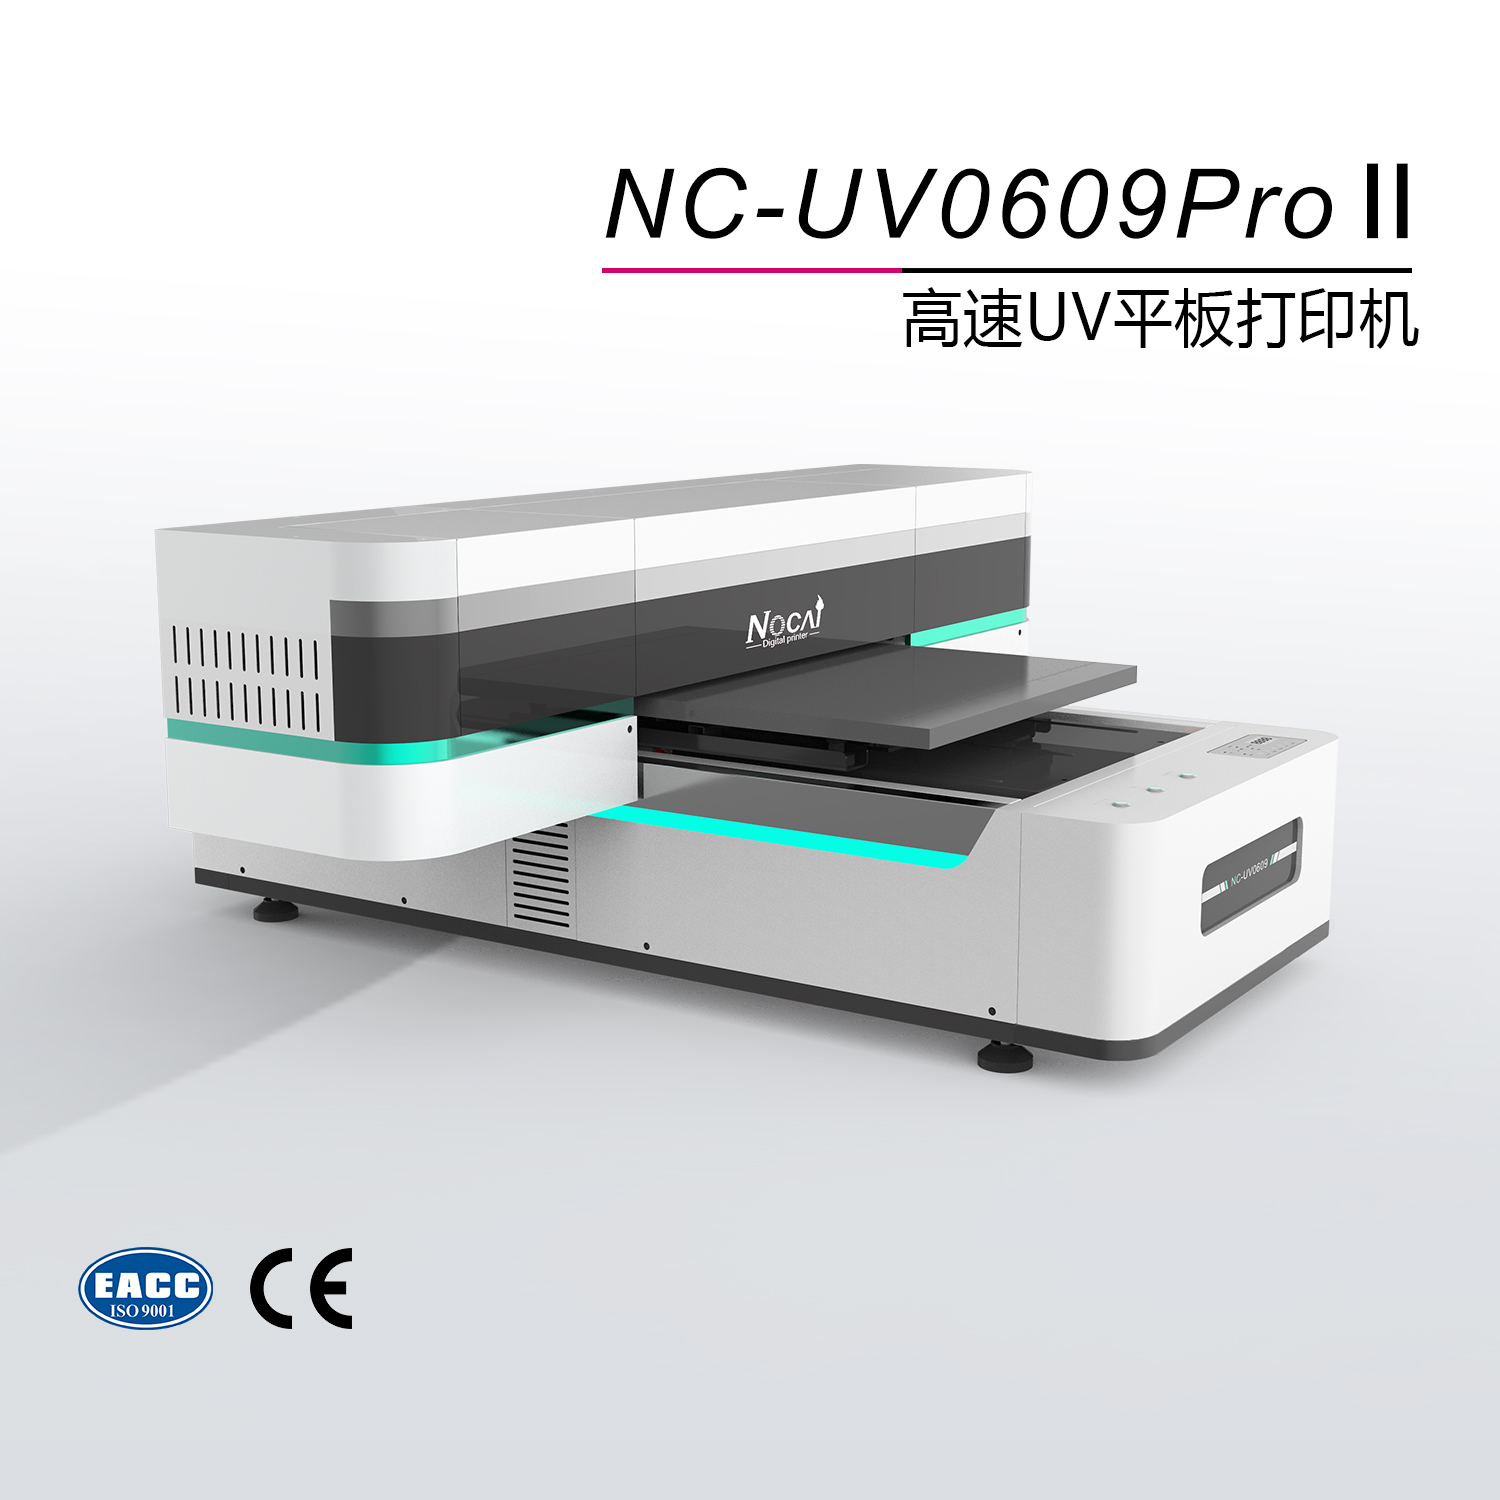 UV平板打印机节省墨水的几种方法